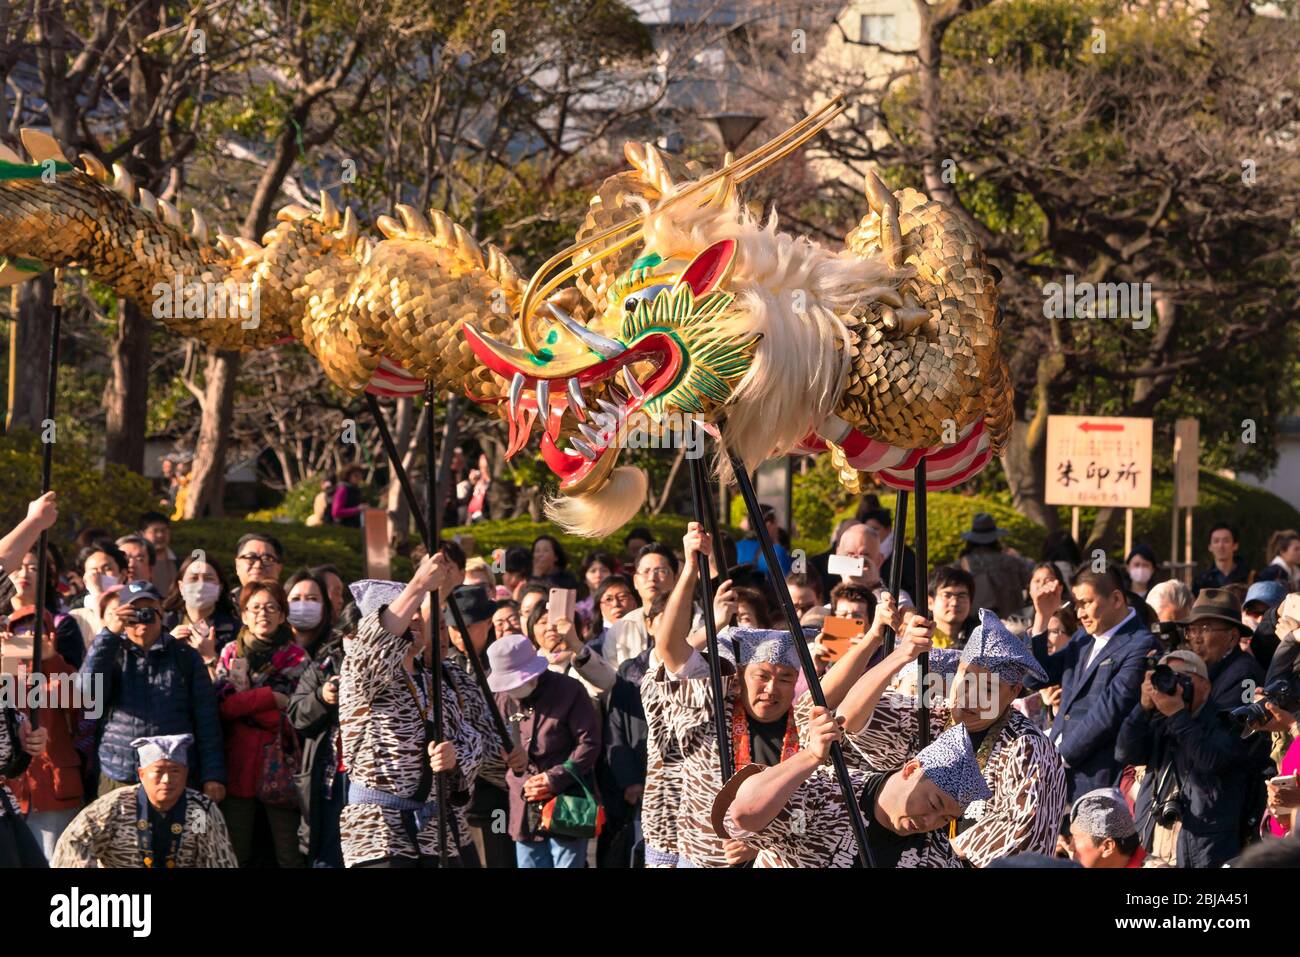 tokio, japan - märz 18 2020: Japanische Puppenspieler halten einen riesigen goldenen Drachen für das traditionelle Tanzfestival, das dem Bodhisattva Kan gewidmet ist Stockfoto